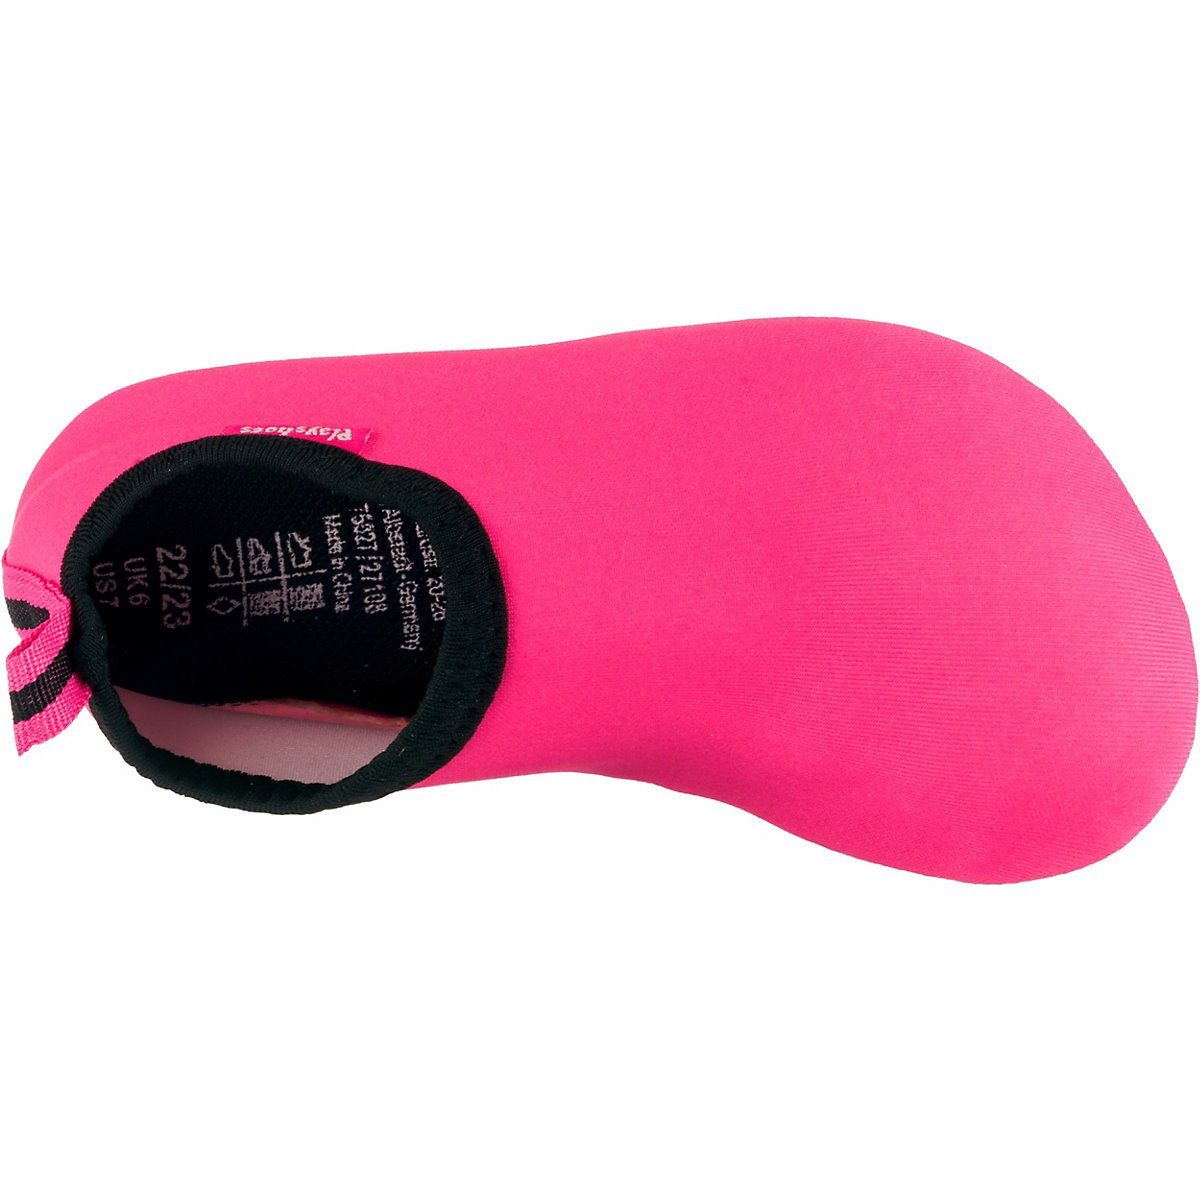 Playshoes Badeschuhe Uni Badeschuh Sohle Wasserschuhe rosa rutschhemmender Schwimmschuhe, mit Passform, flexible Barfuß-Schuh